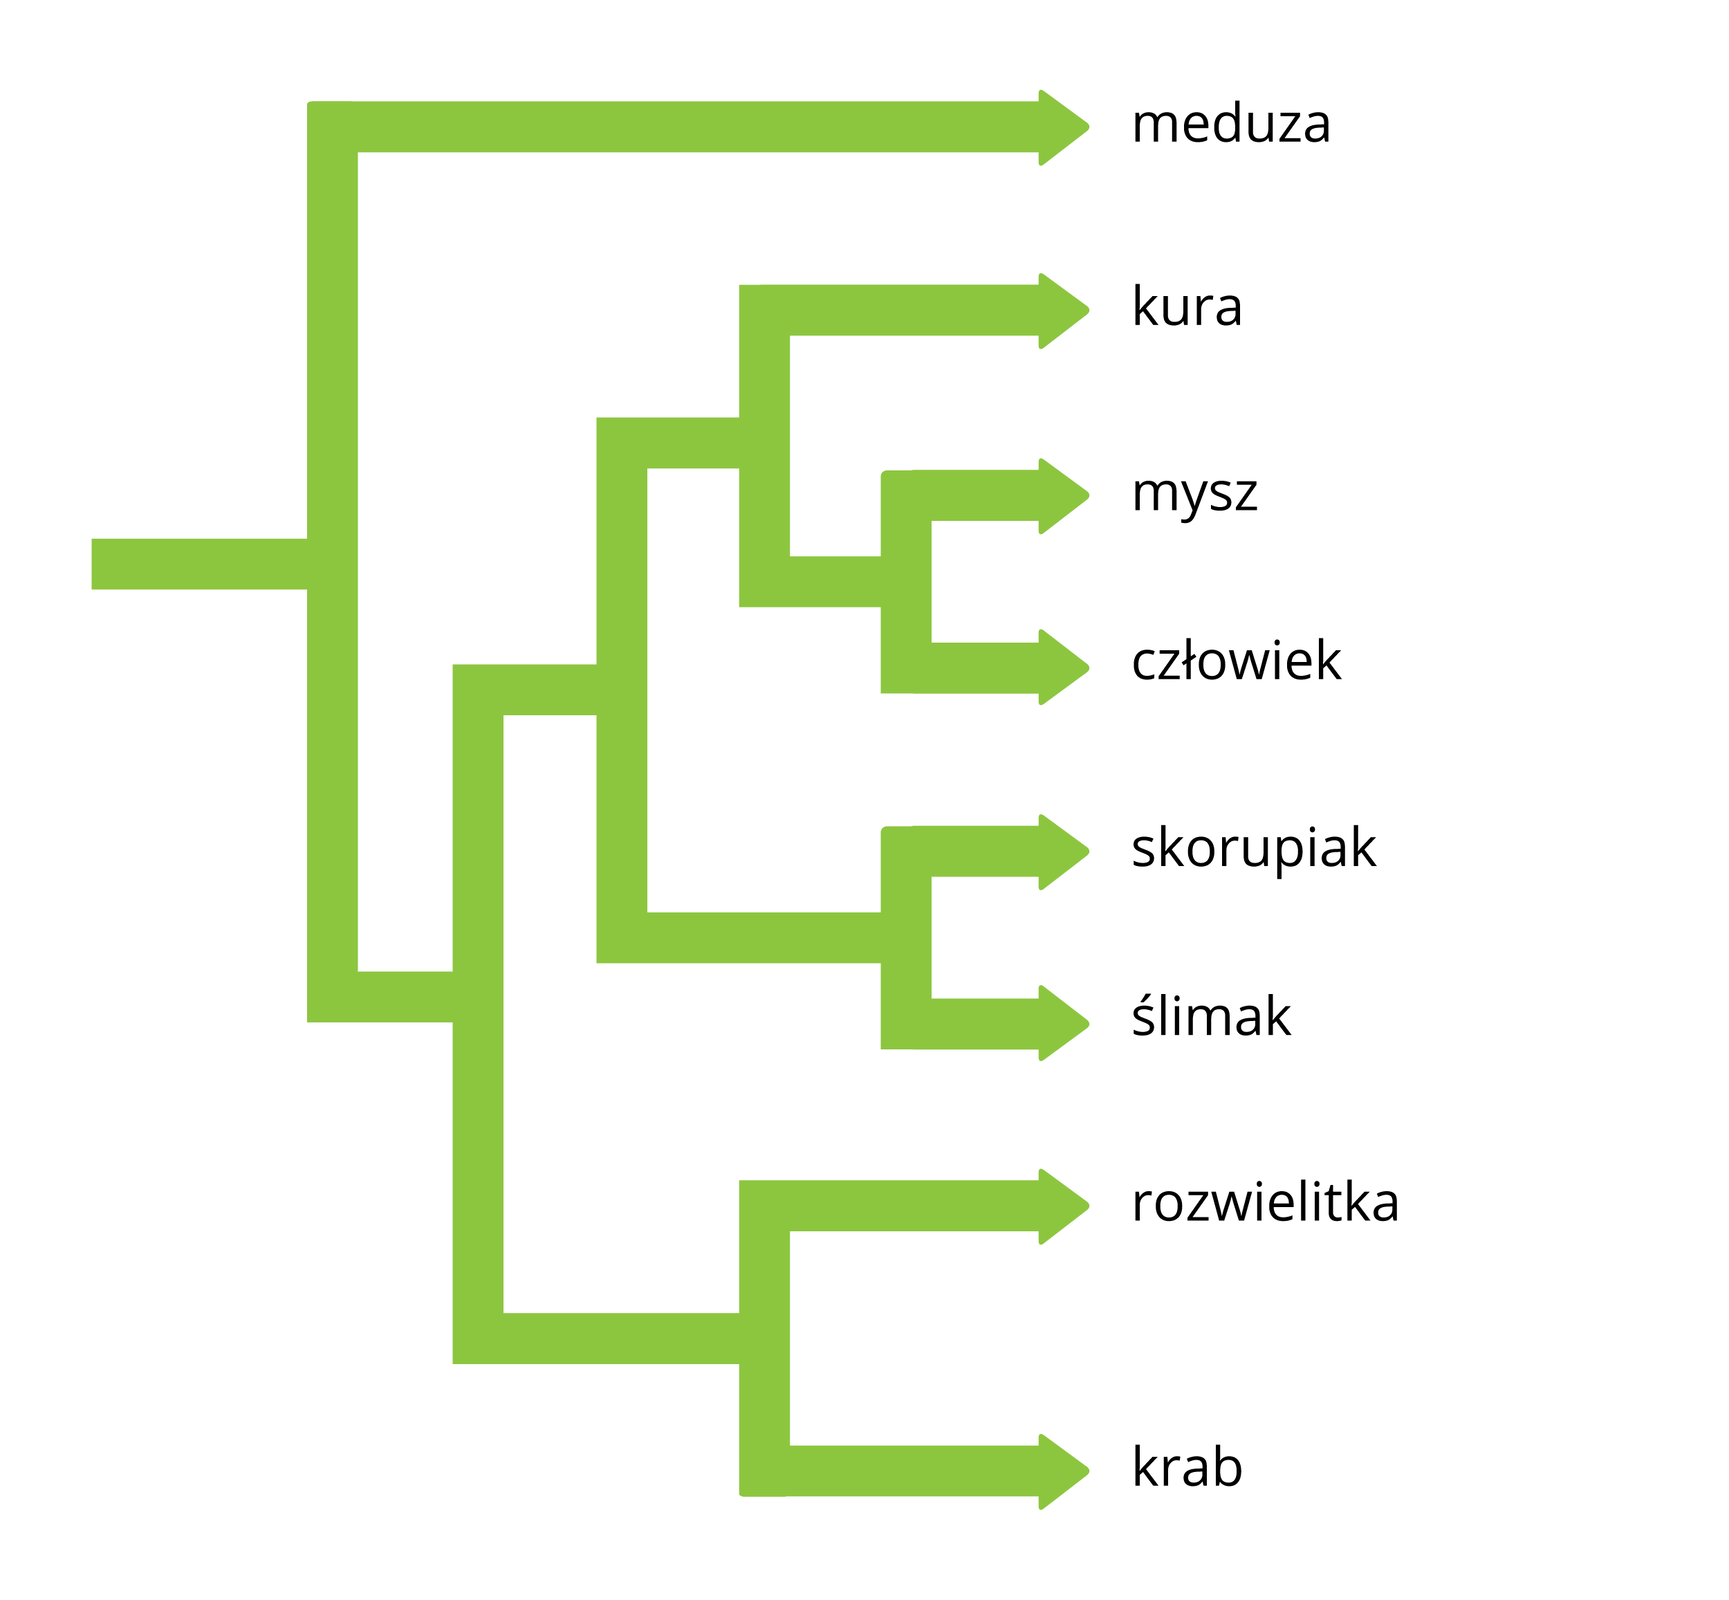 Schemat przedstawia zielone strzałki, które łączą się lub wynikają jedna z drugiej. Po prawej za poszczególnymi strzałkami znajdują się nazwy rodzajowe. Strzałki oznaczają pokrewieństwo pomiędzy organizmami, ustalone na podstawie porównania białka, budującego ich receptor jądrowy.